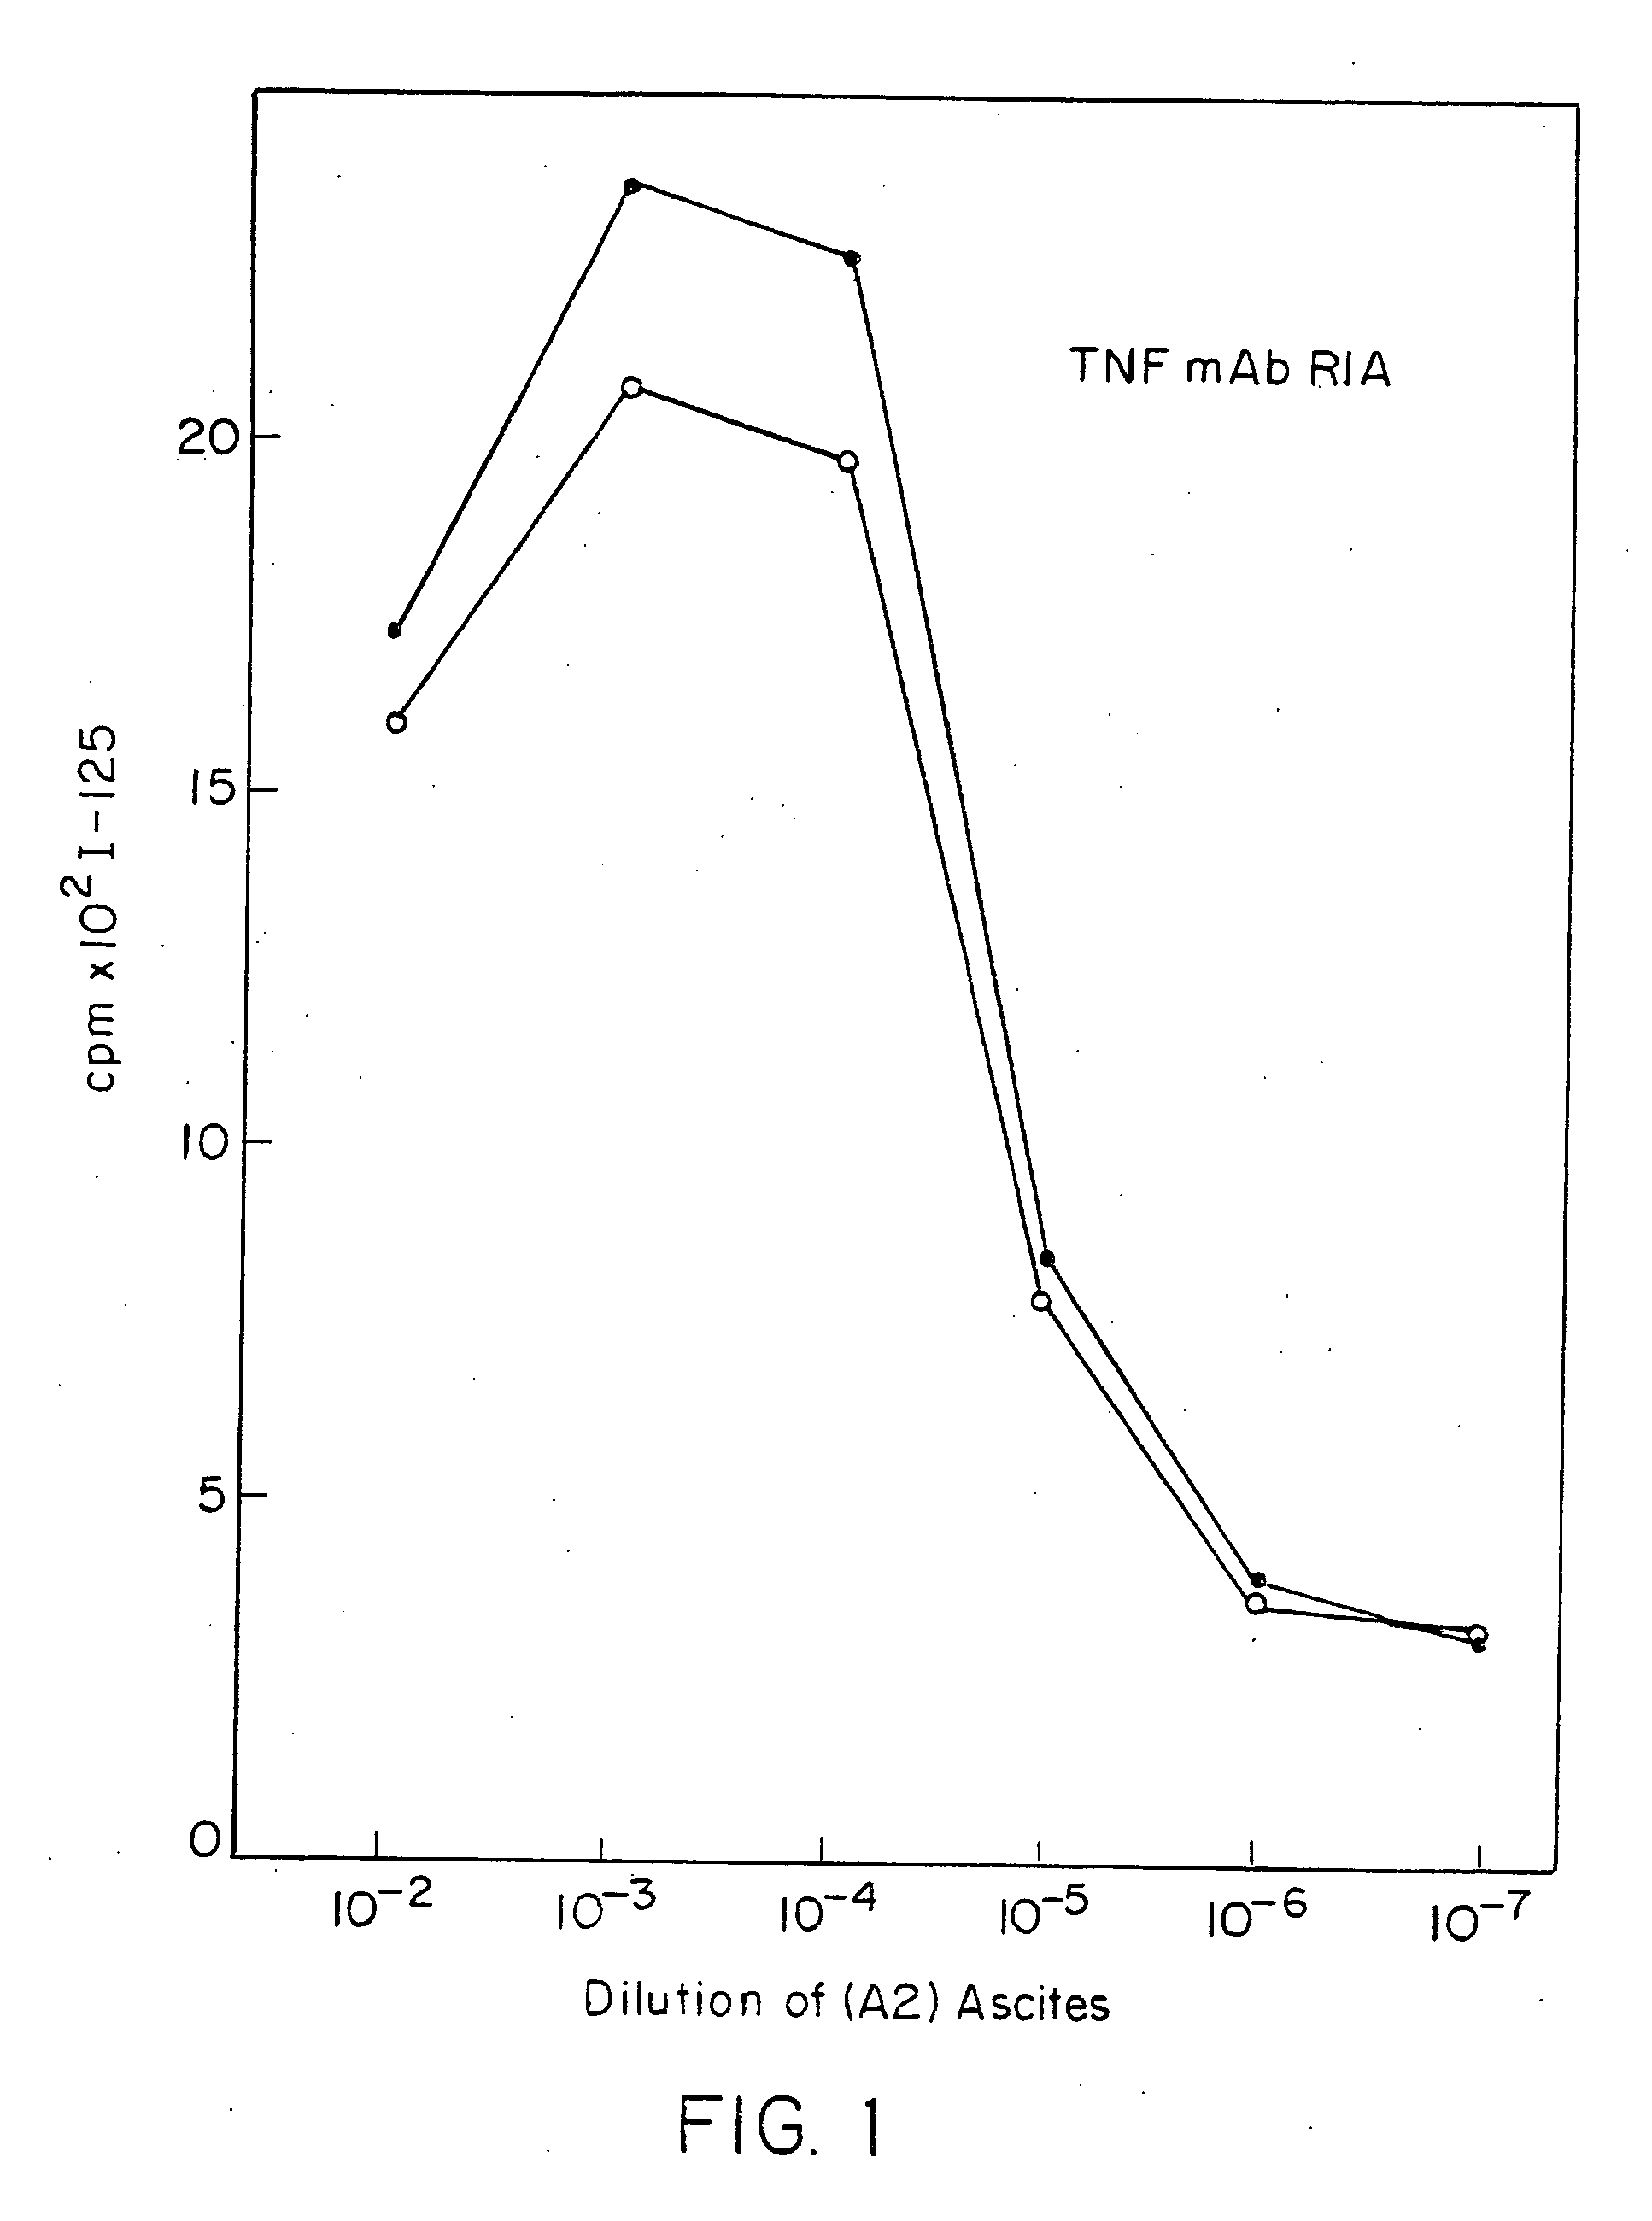 Anti-TNF chimeric antibody fragments